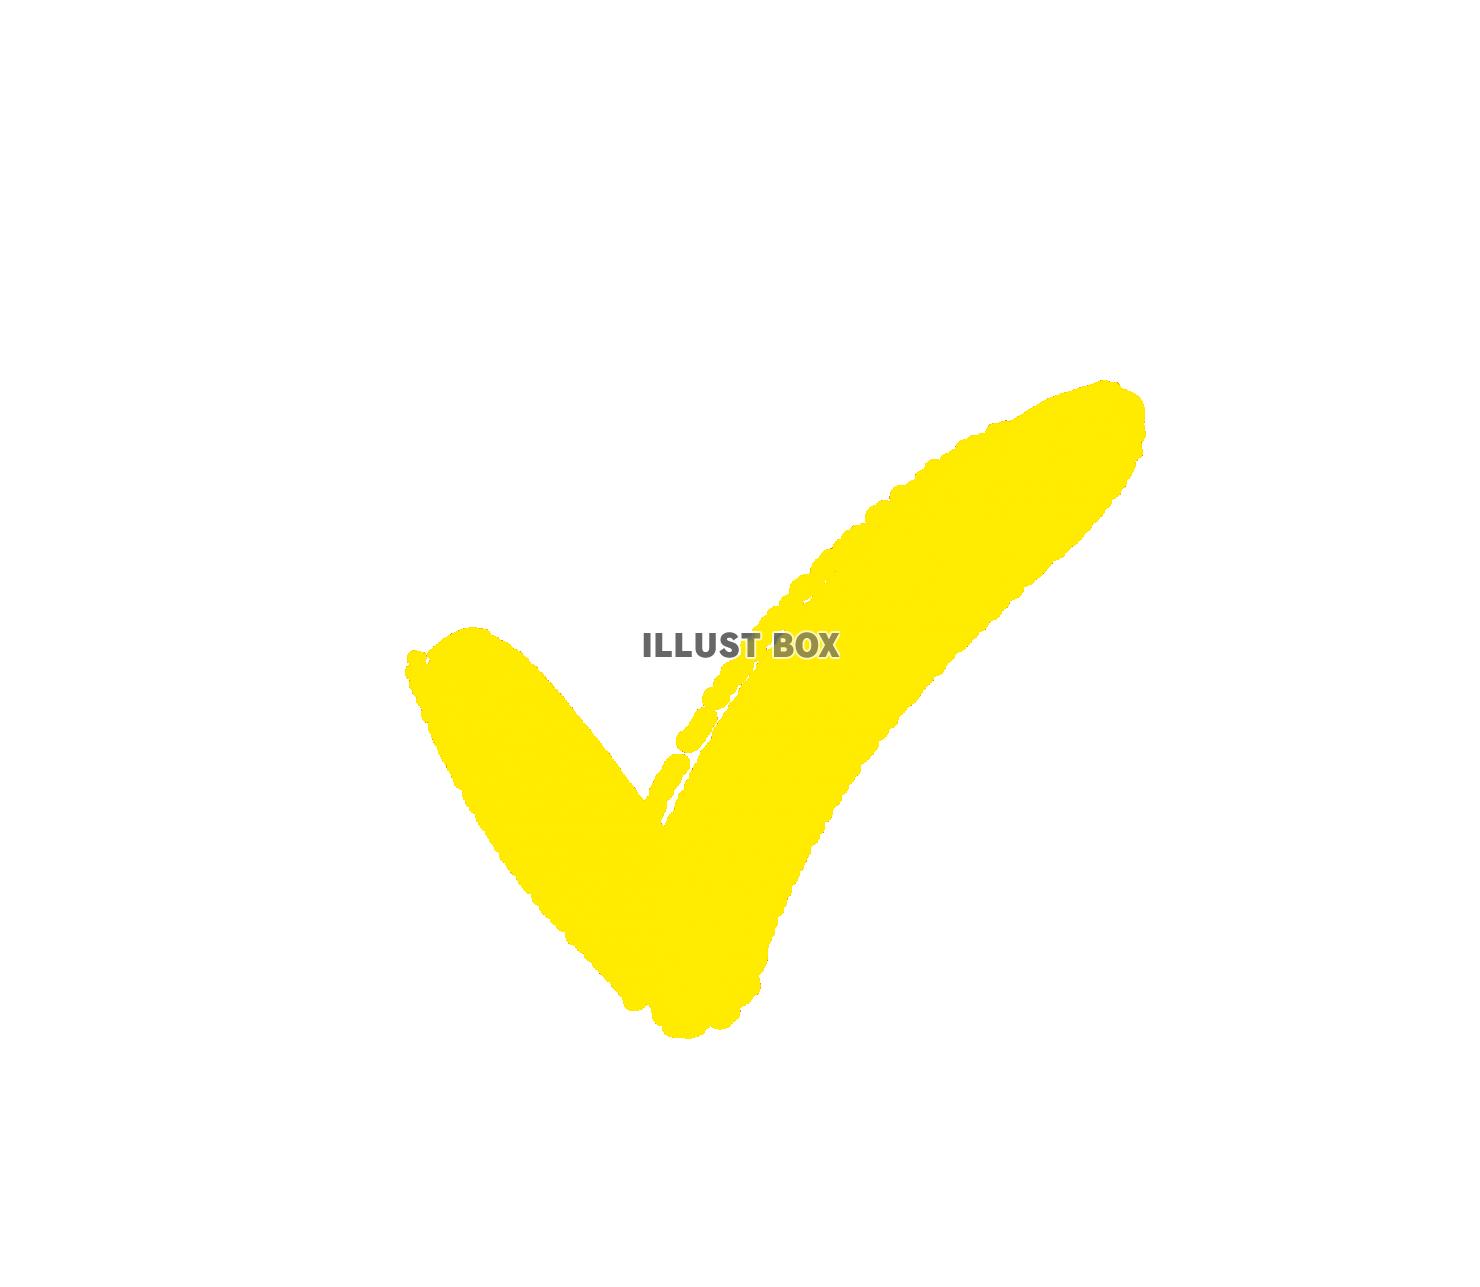 レ点のチェックマーク(黄色)